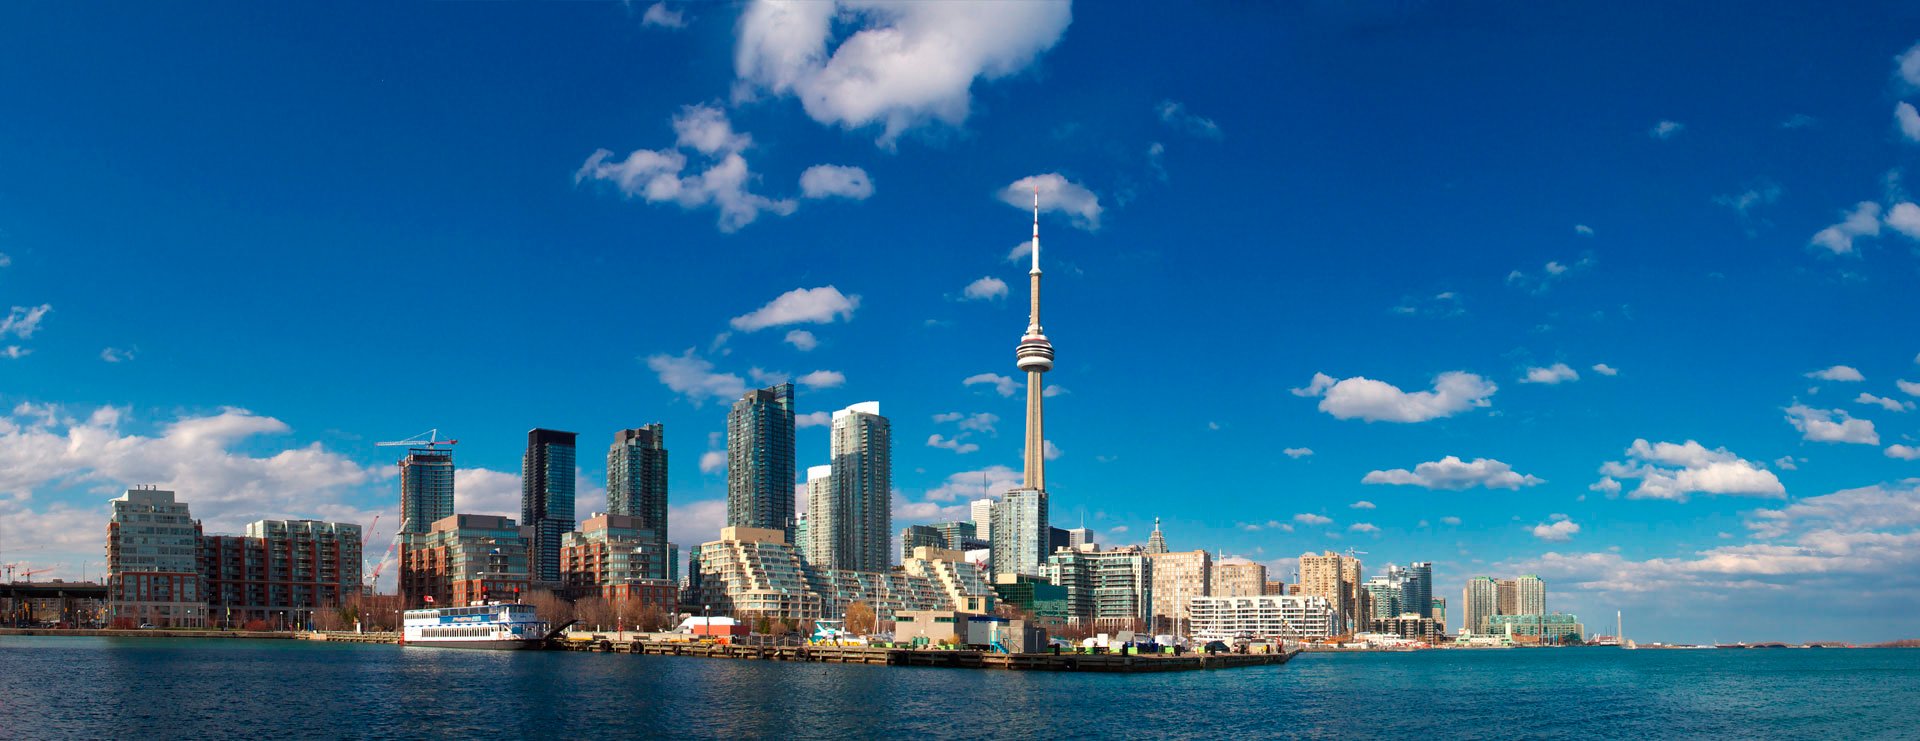 Bannière promotionnelle pour le congrès 2020, Inspirer la confiance au public. La bannière contient une image du paysage urbain de la ville de Toronto.